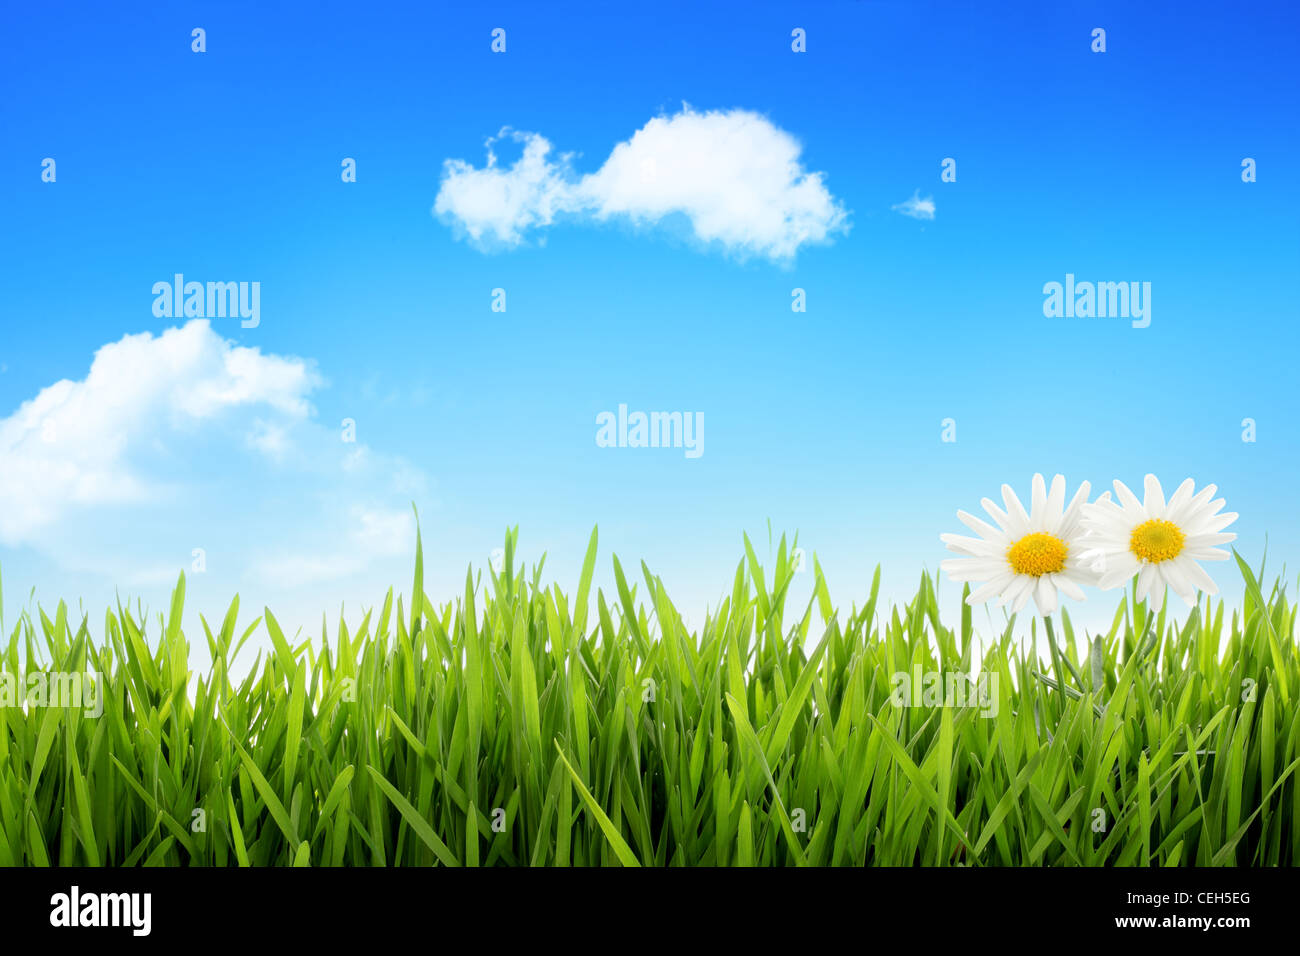 Daisy bianca in erba contro il cielo blu Foto Stock